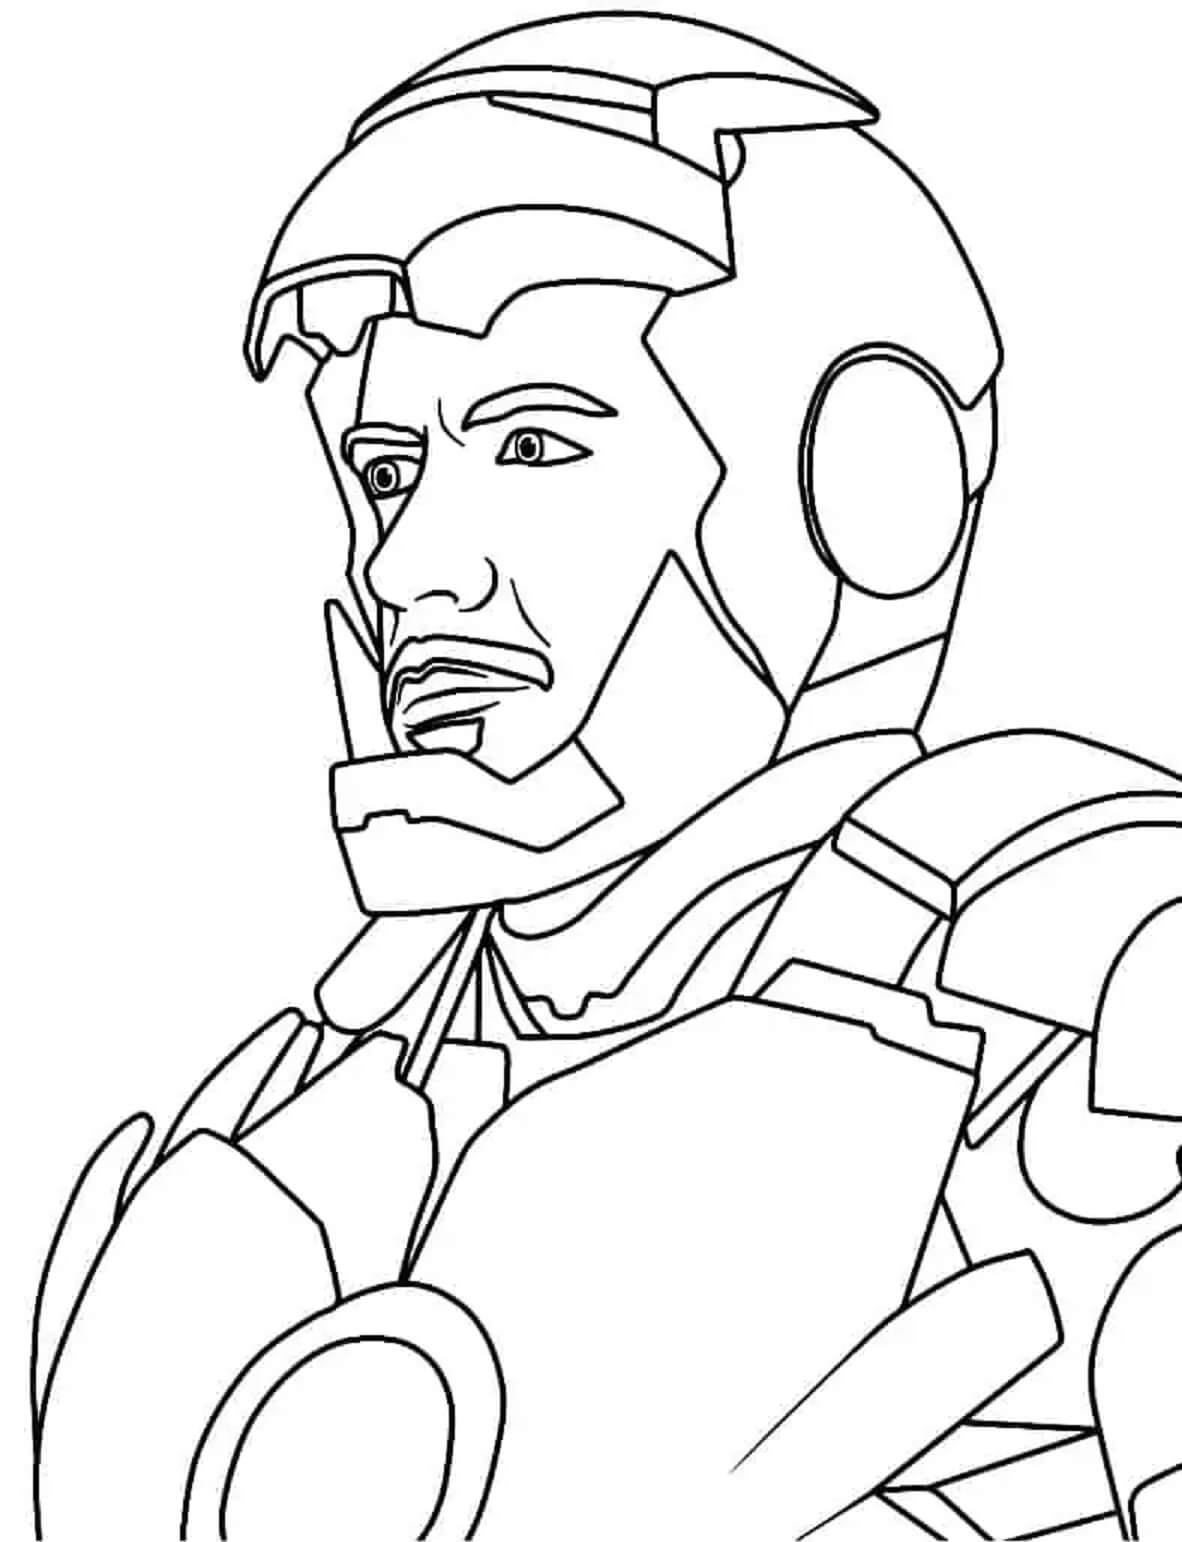 Desenhos de Retrato legal do Homem de Ferro para colorir